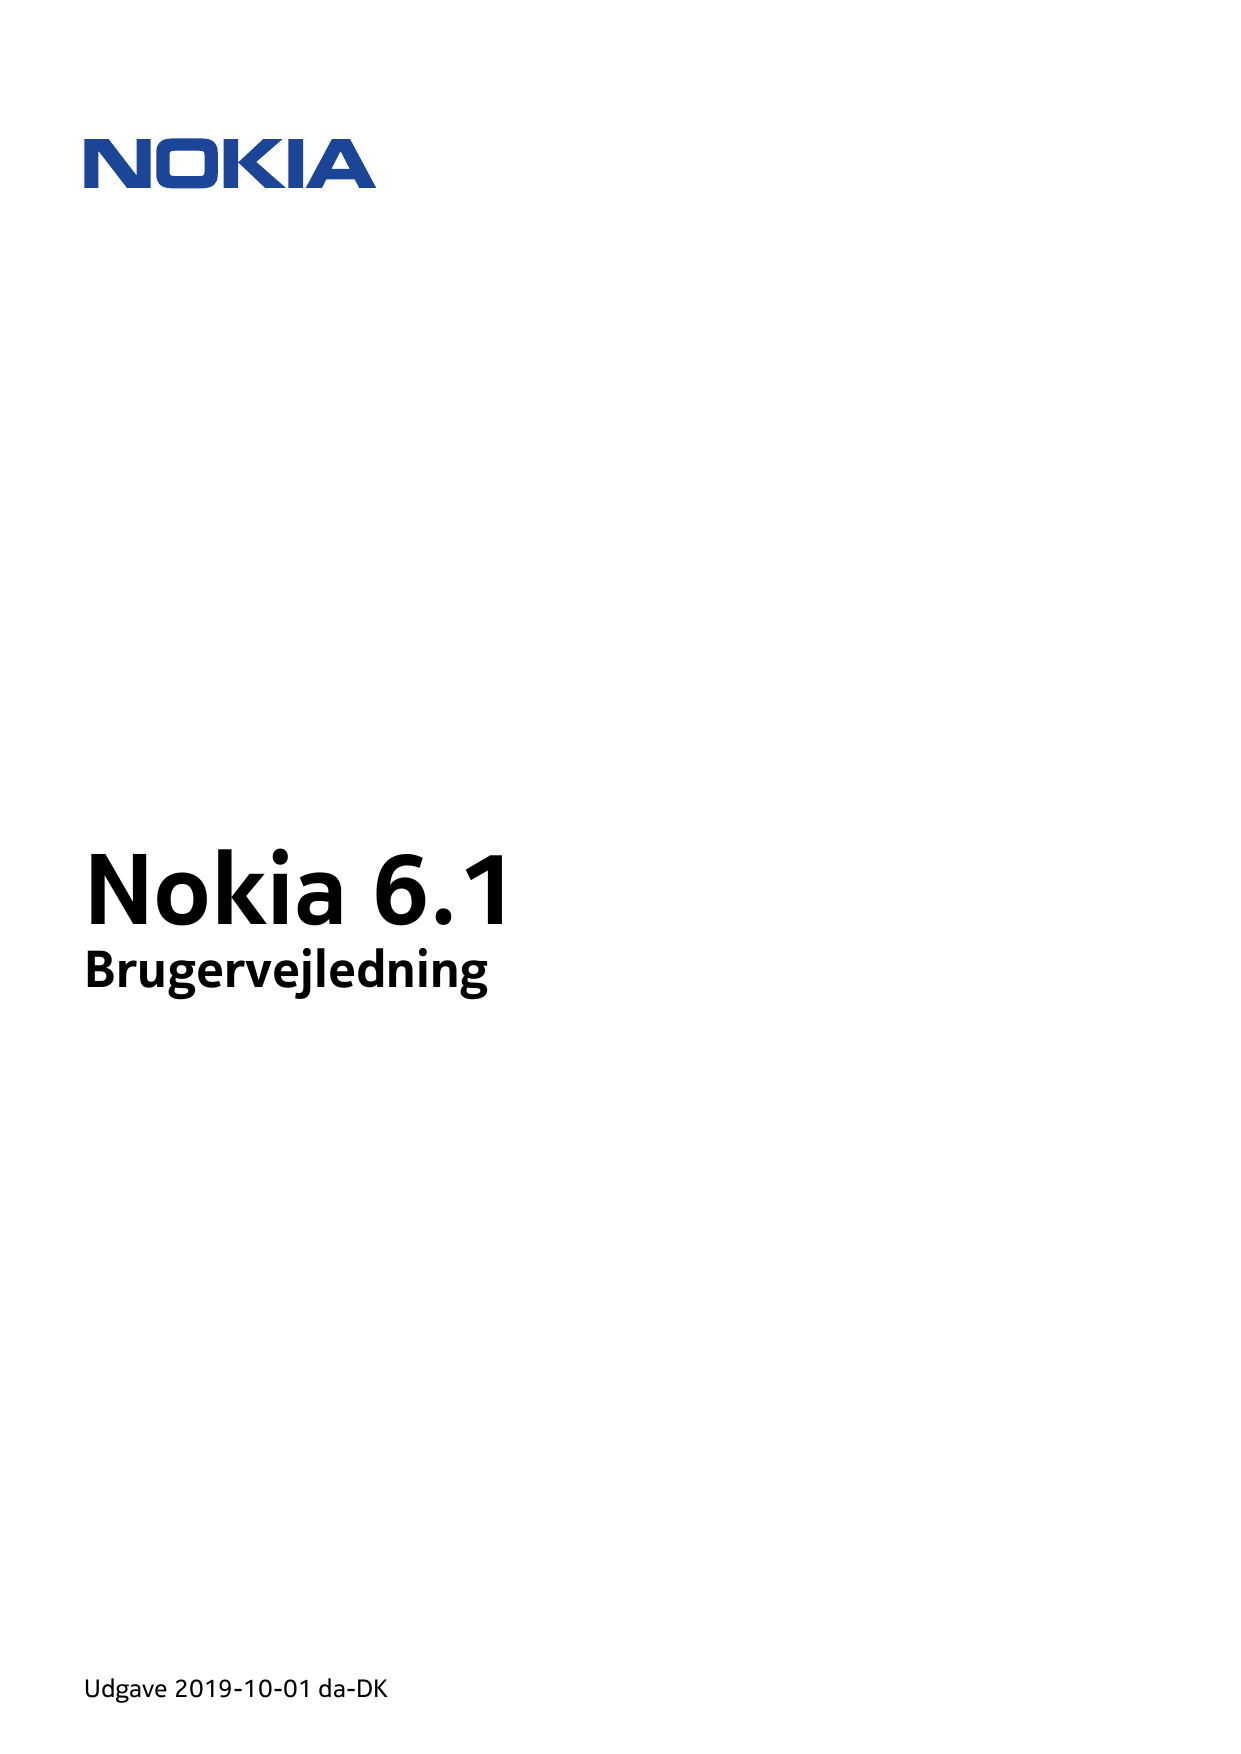 Nokia 6.1BrugervejledningUdgave 2019-10-01 da-DK